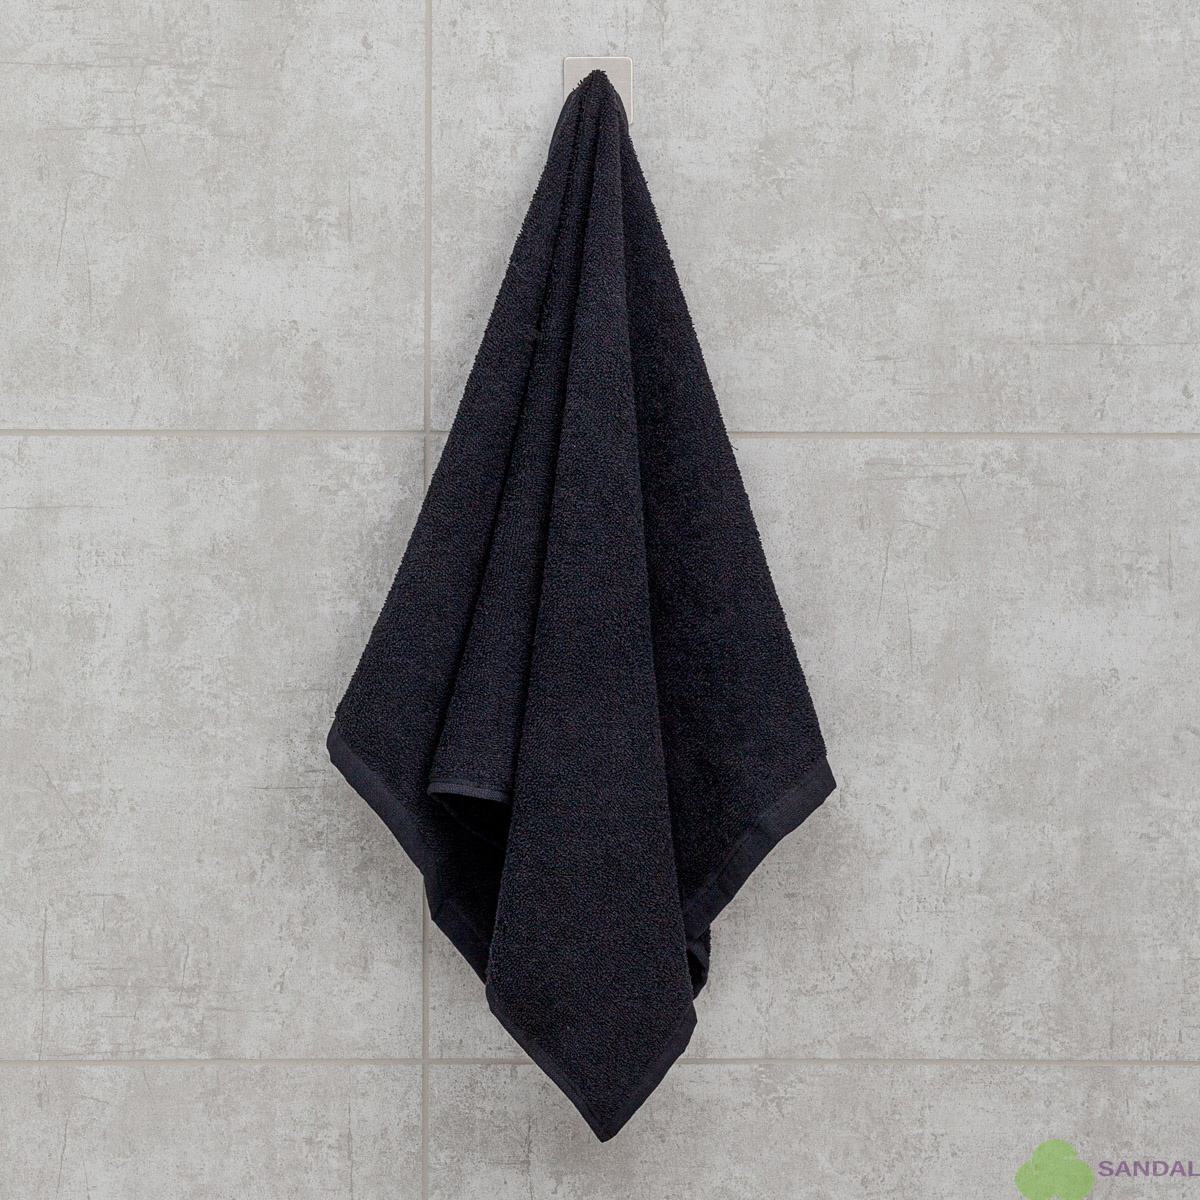 Махровое полотенце Sandal "оптима" 50*90 см., плотность - 380 гр., цвет - черный